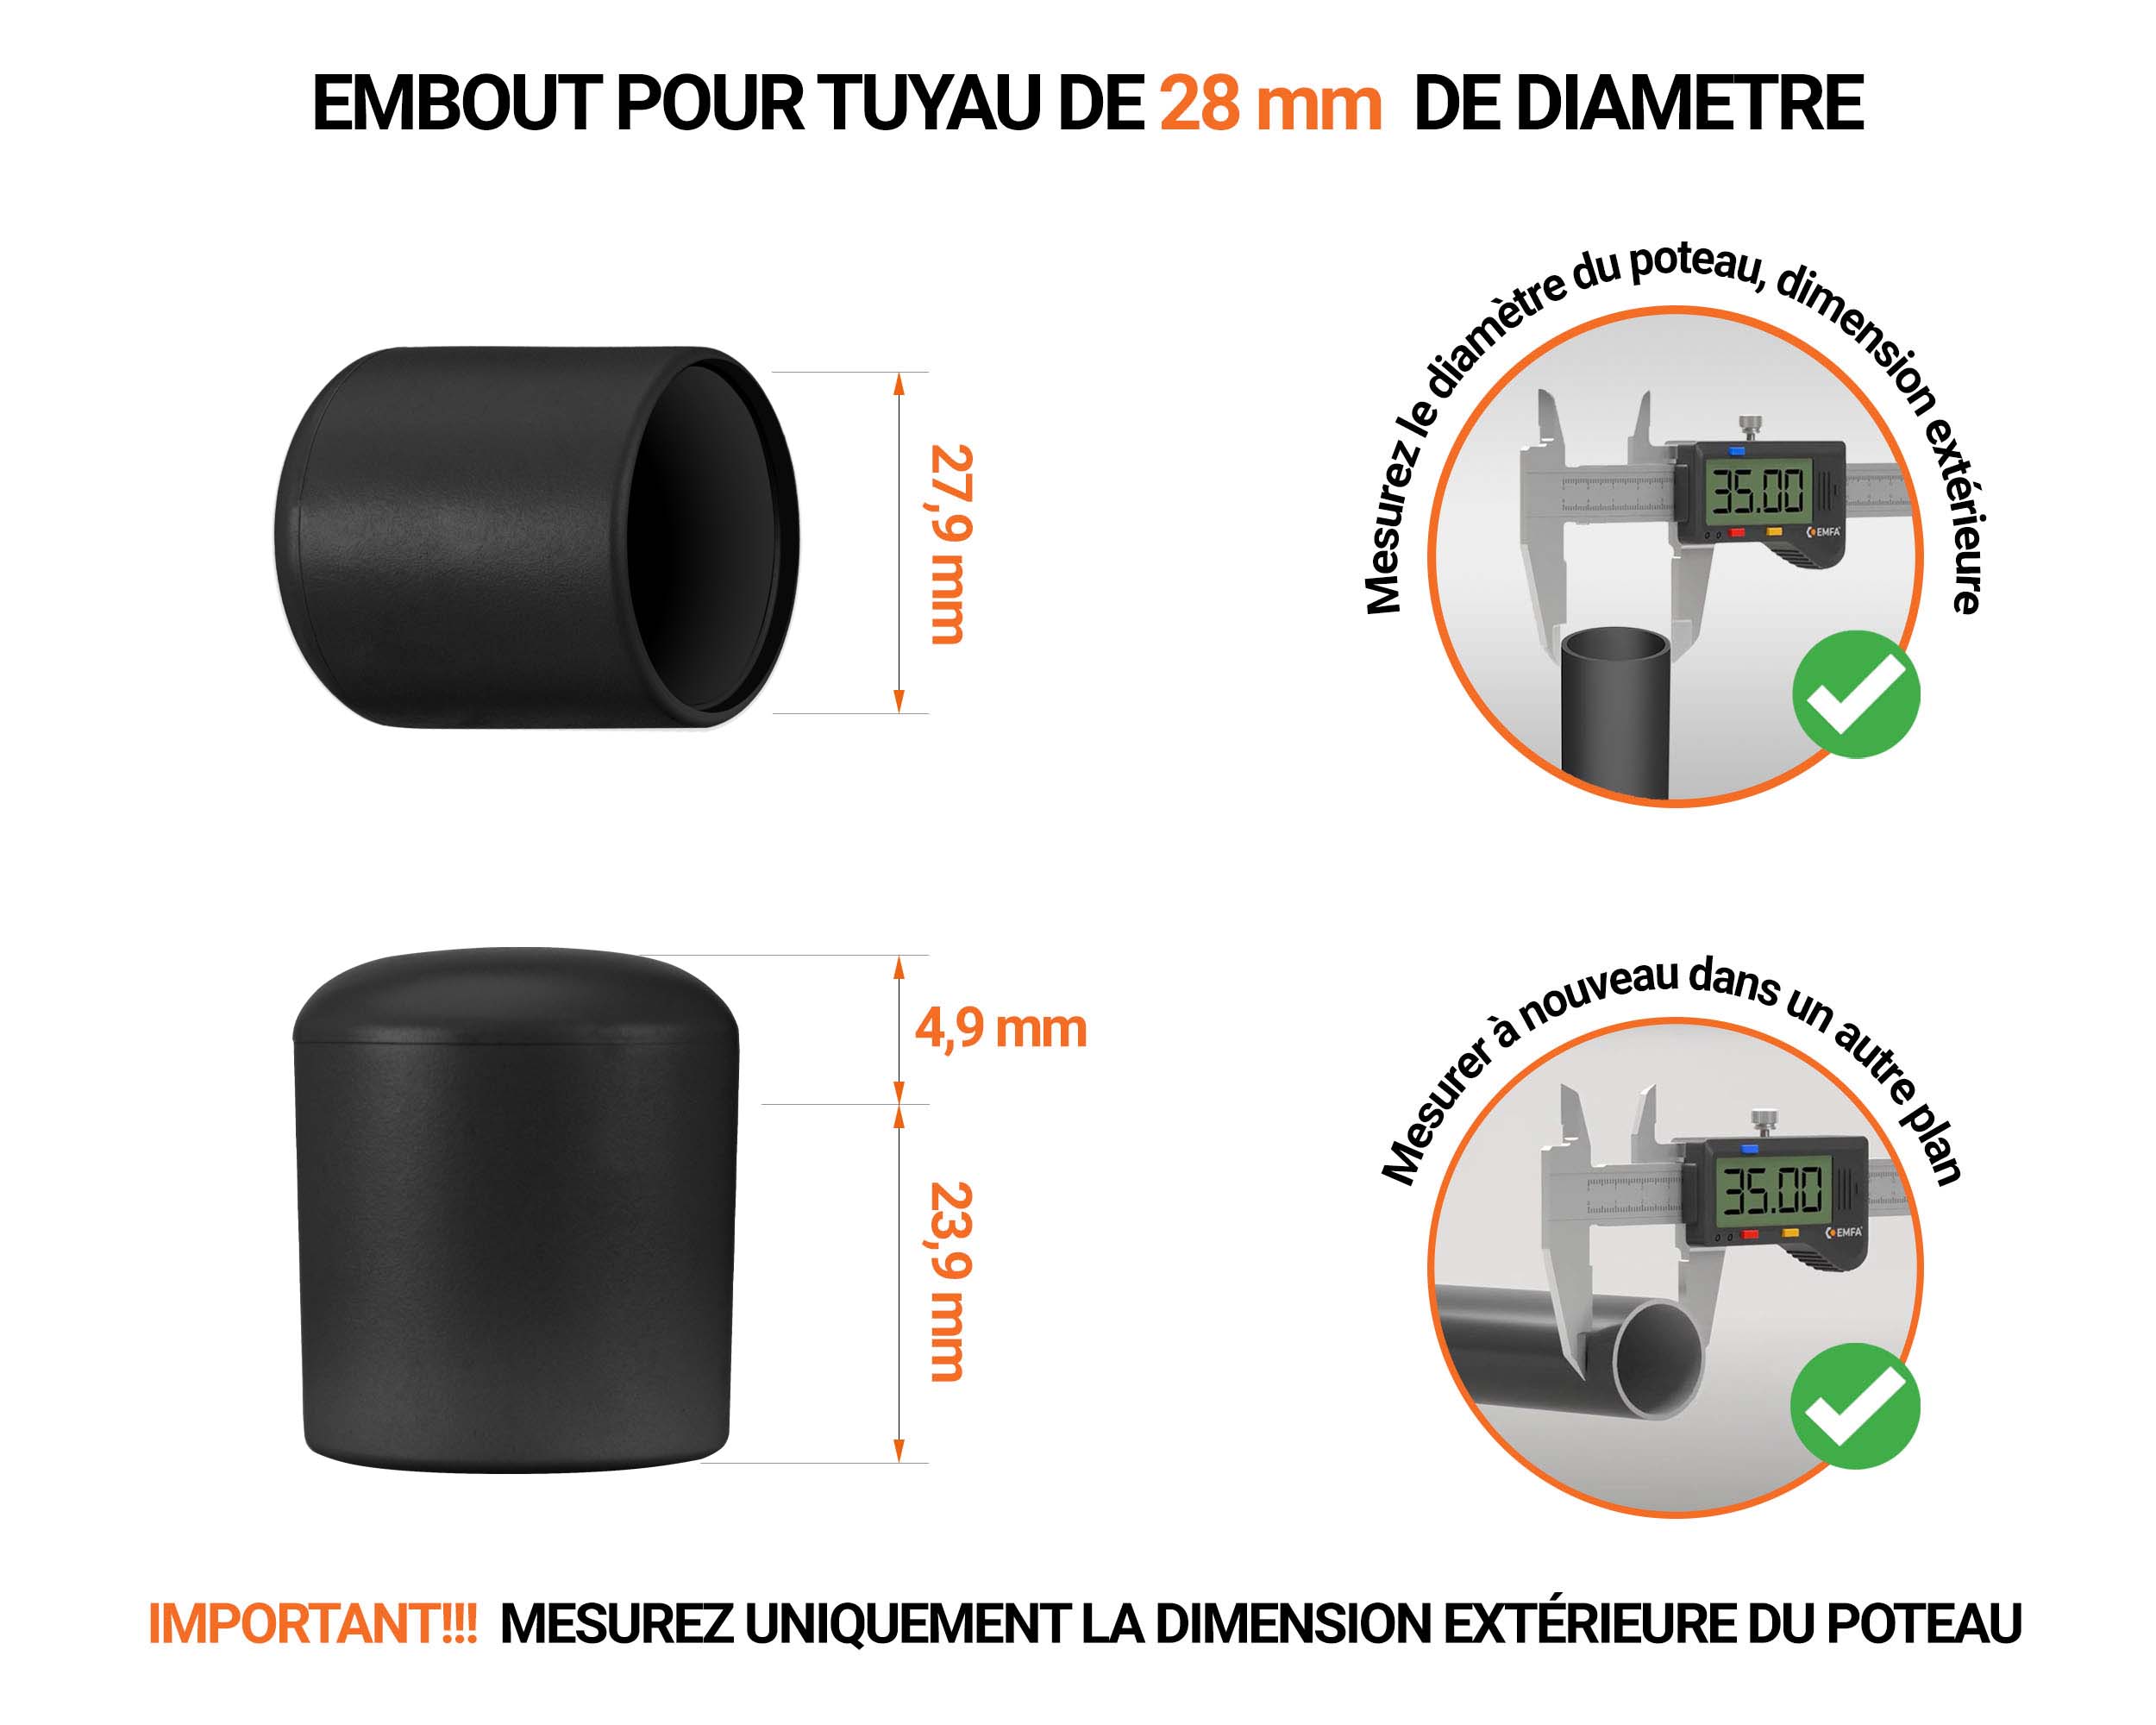 Embout gris de diamètre extérieur 30 mm pour tube rond avec dimensions et guide de mesure correcte du bouchon plastique.